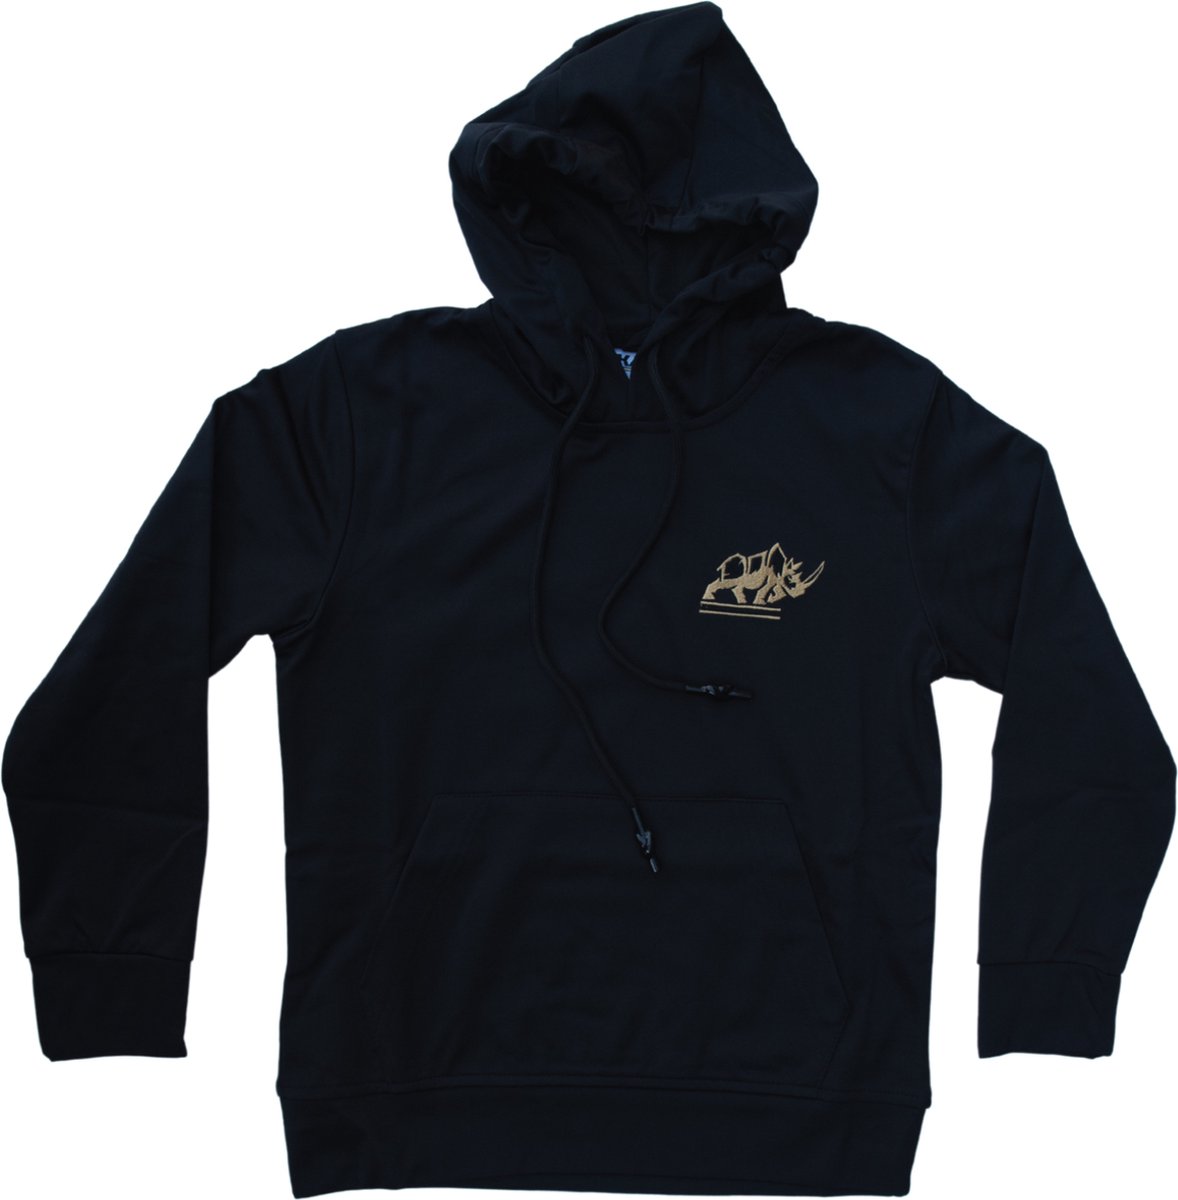 KAET - hoodie - unisex - Zwart - maat - M - outdoor - sportief - trui met capuchon - zacht gevoerd